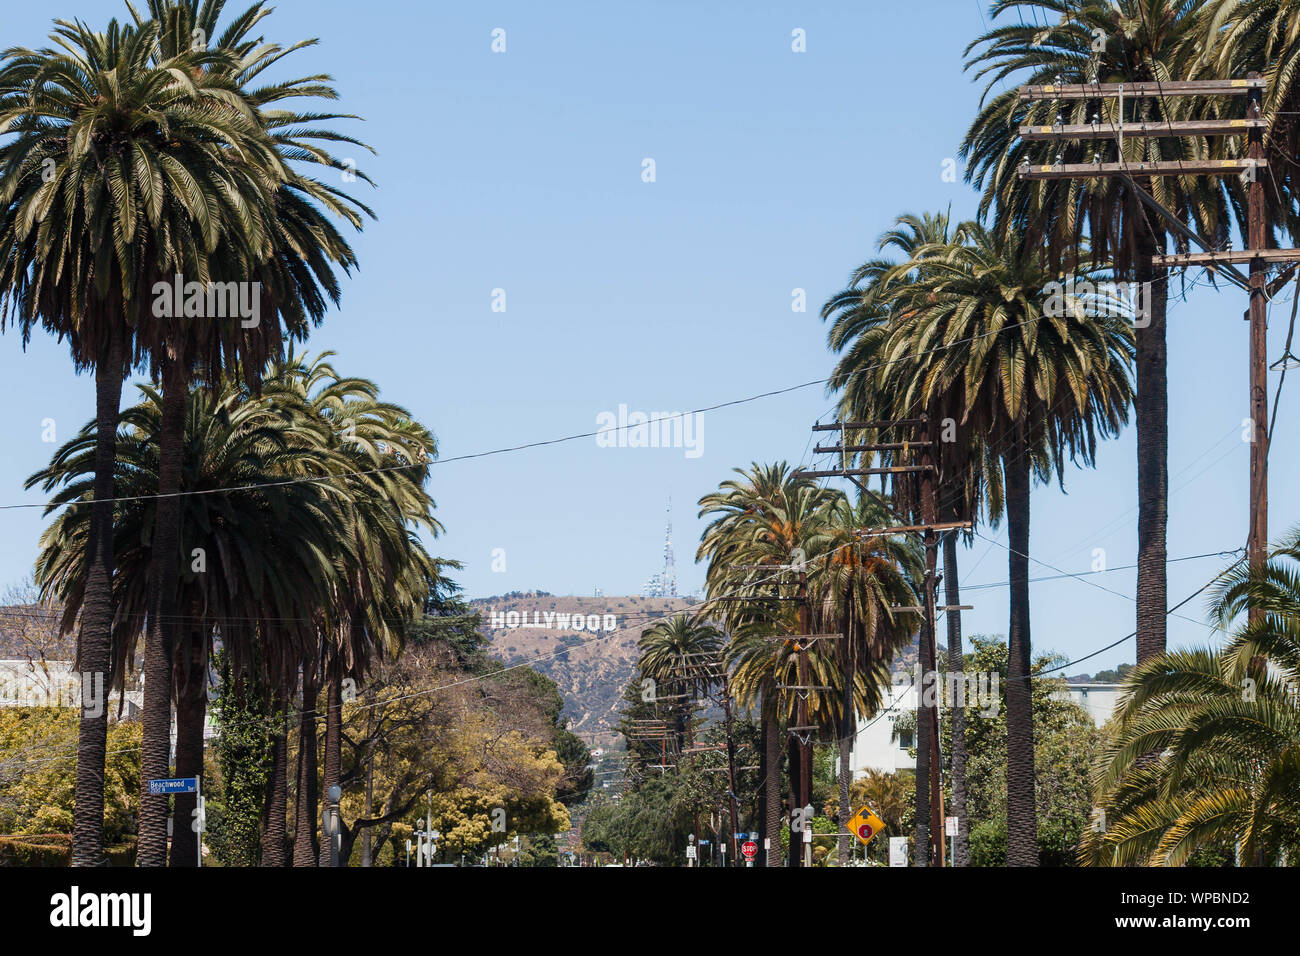 Línea de árboles conduce al cartel de Hollywood en Los Angeles Foto de stock